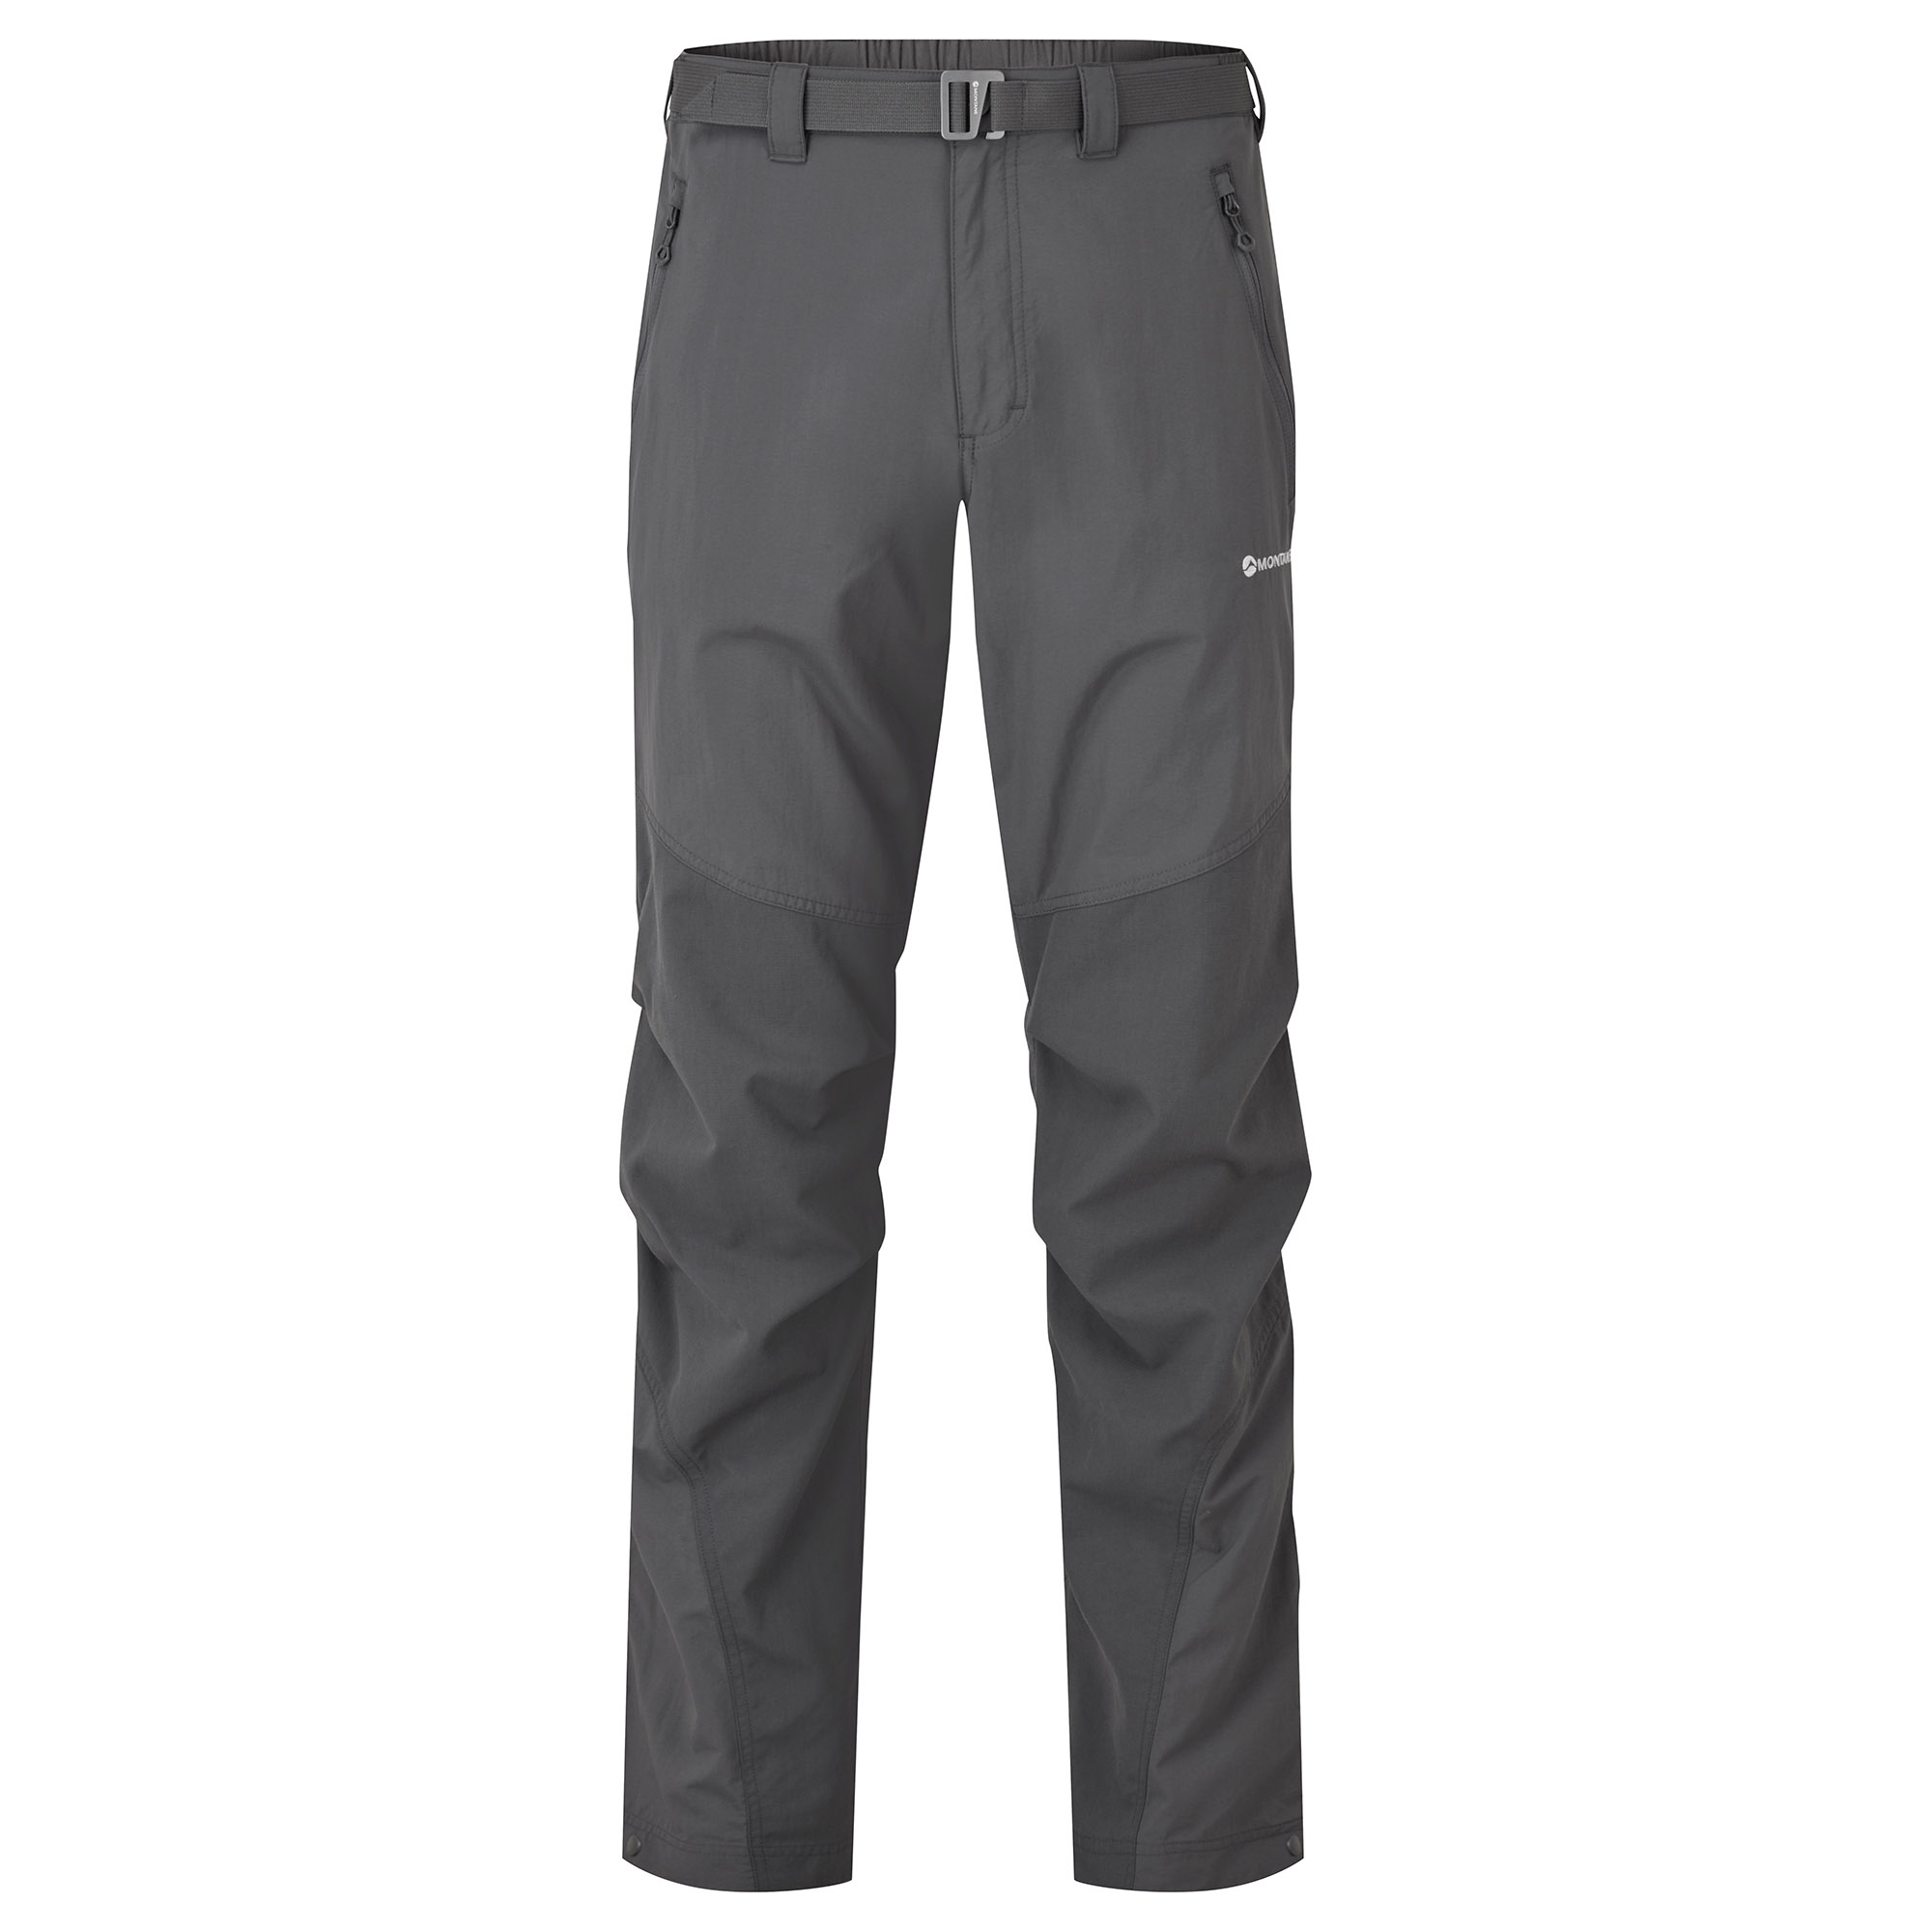 Montane pánské softshellové kalhoty Terra Pants - Zkrácené Nohavice Barva: Slate, Velikost: 30